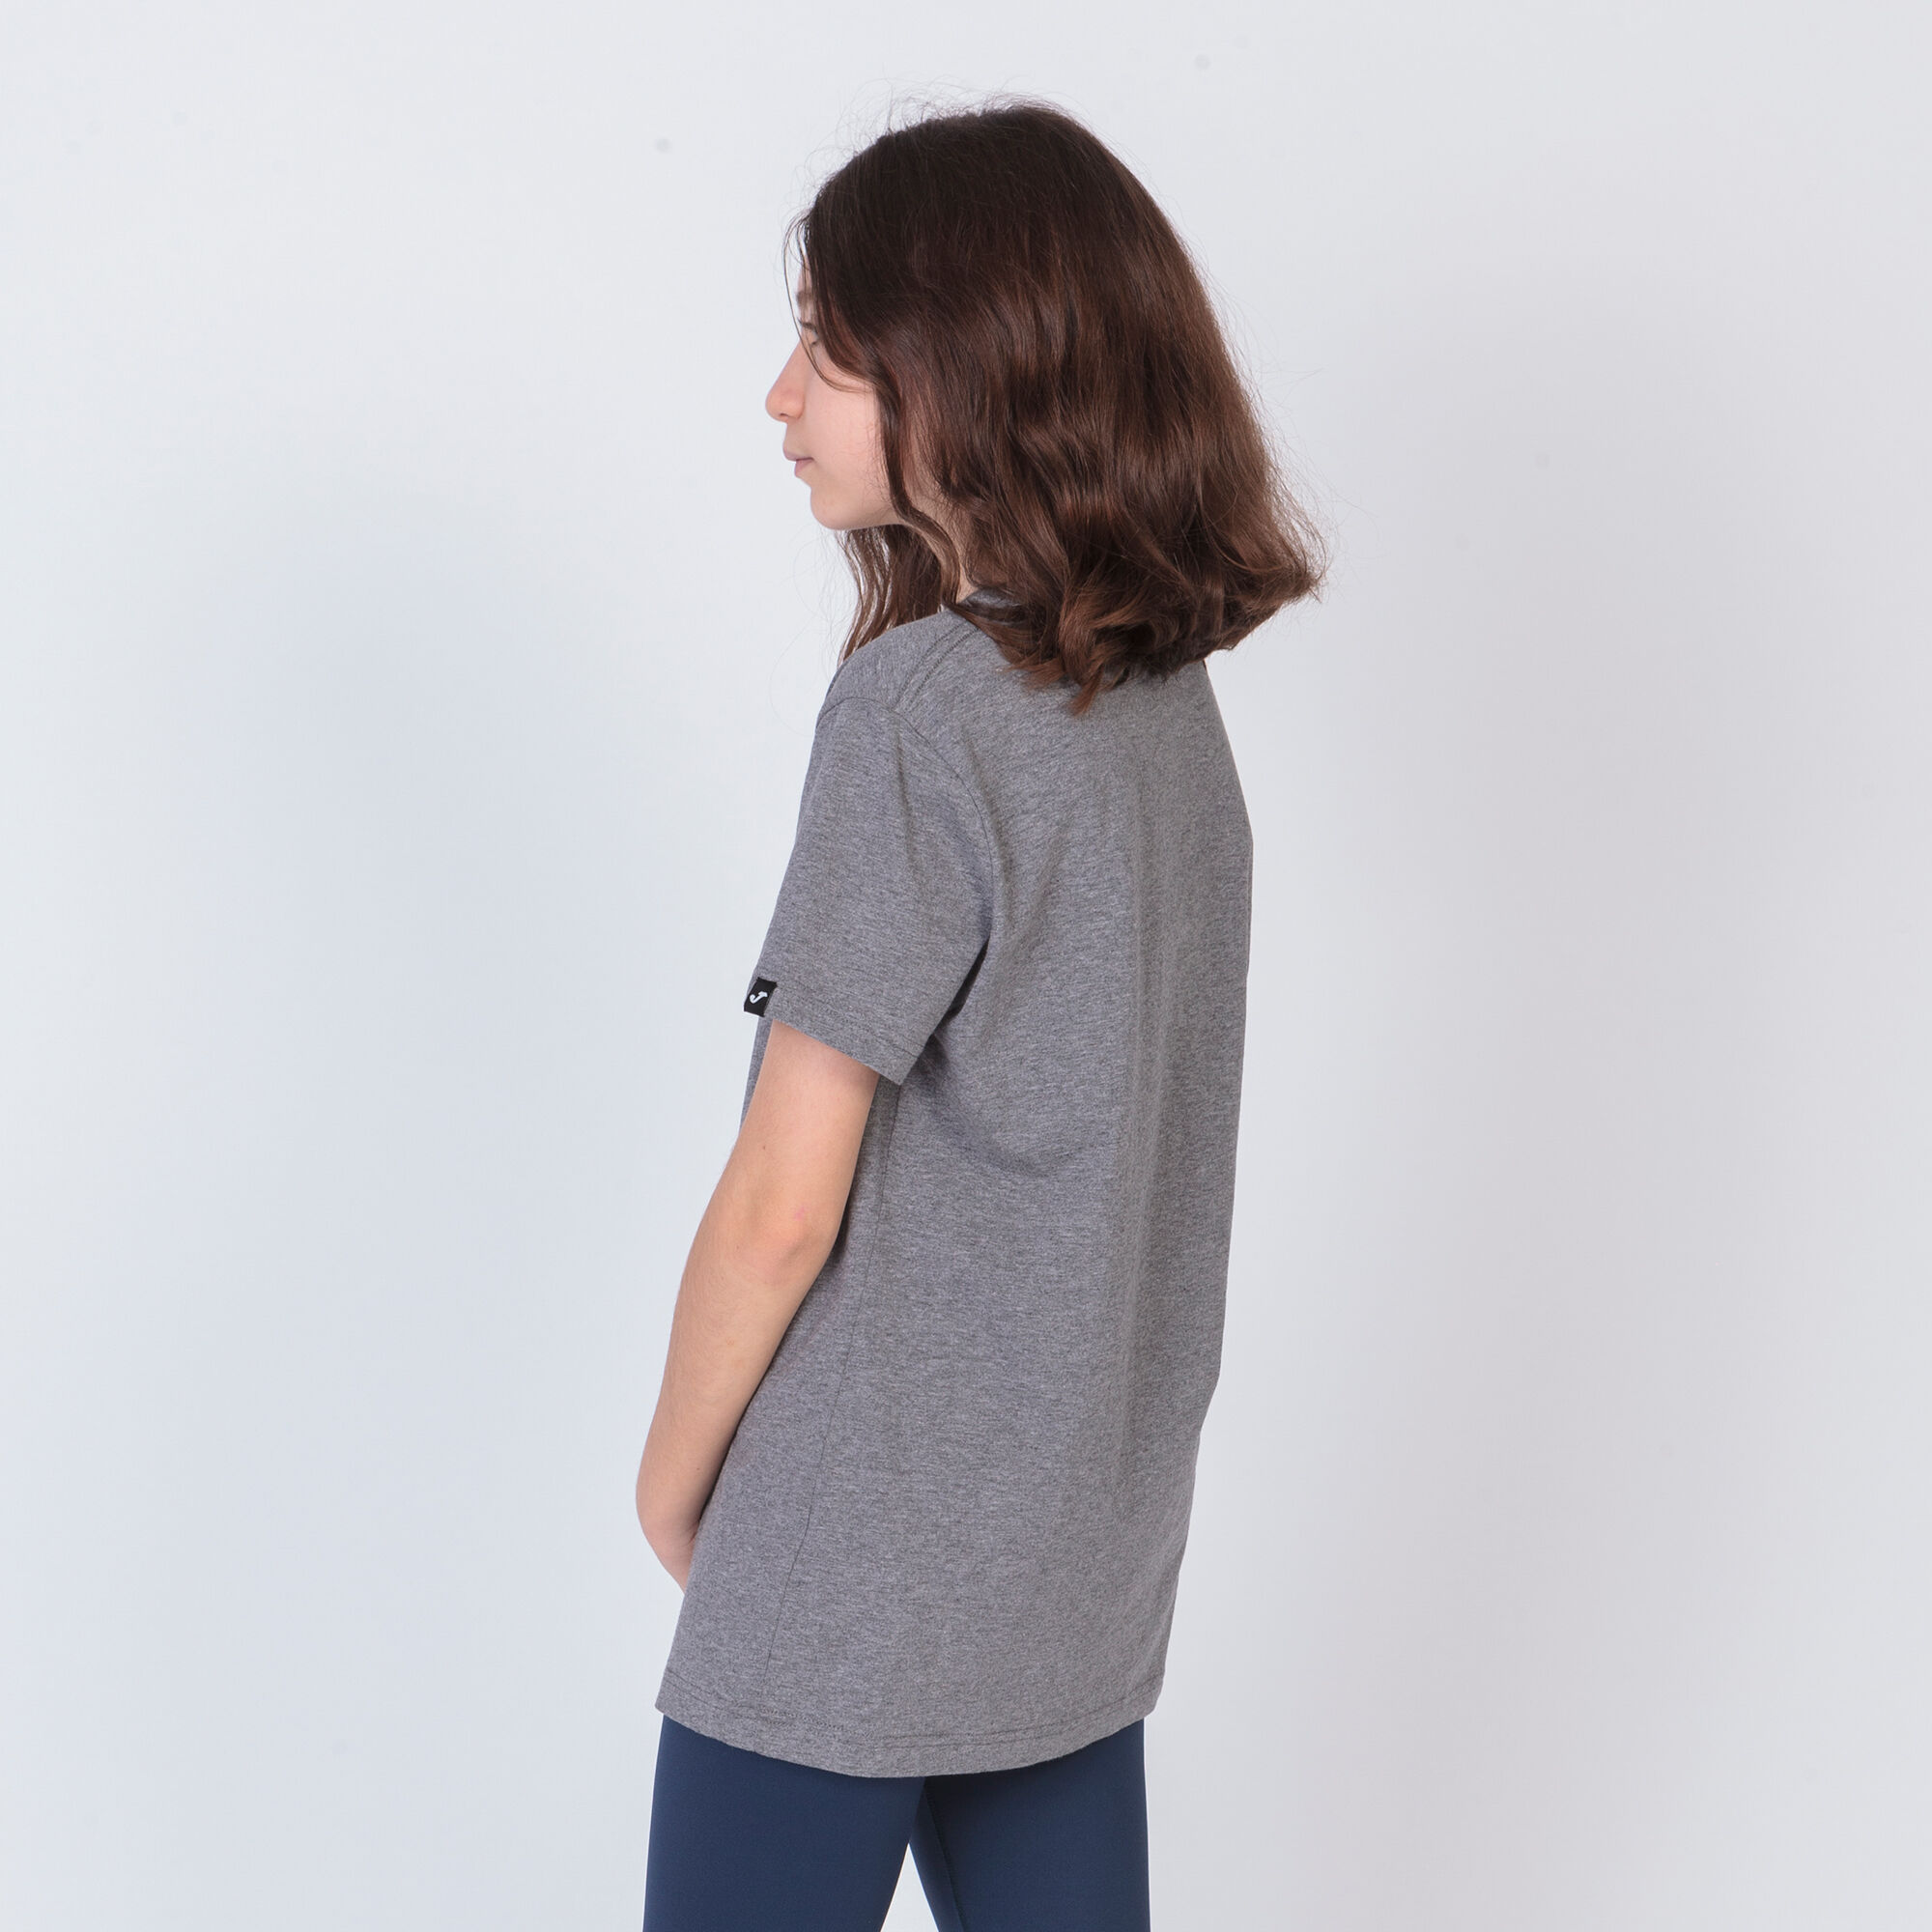 Camiseta manga corta mujer Desert gris melange